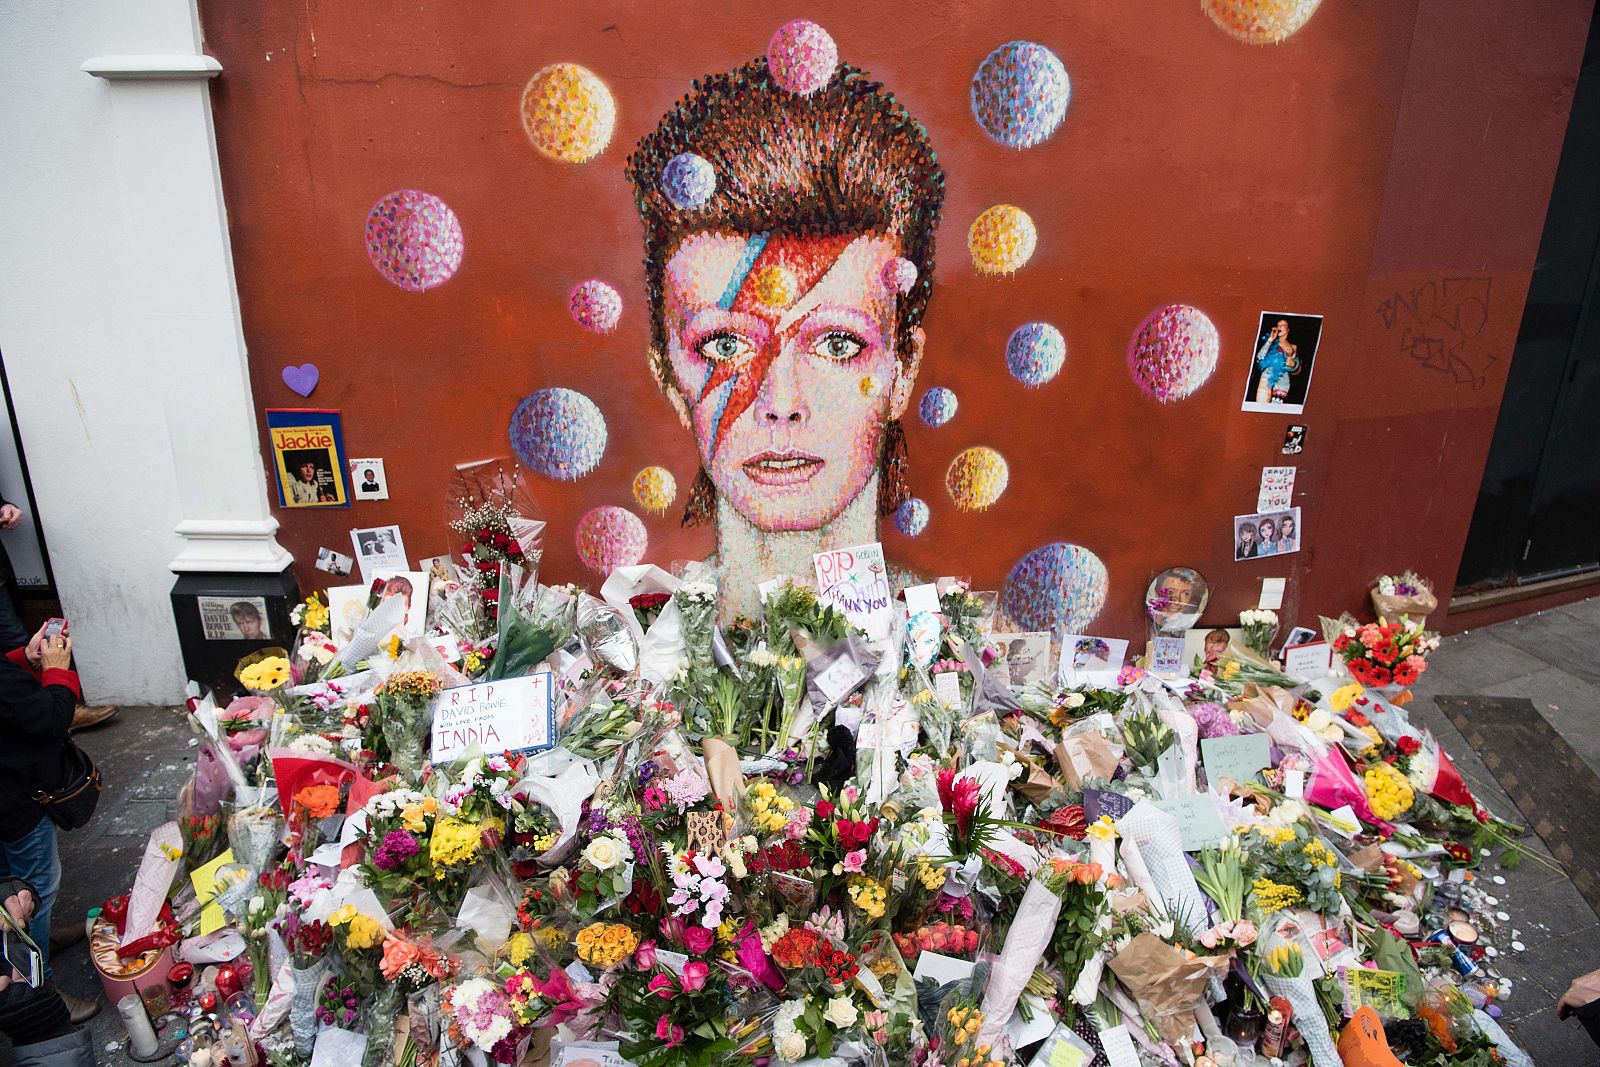 Los fans de Bowie han depositado miles de flores en el mural de Brixton.